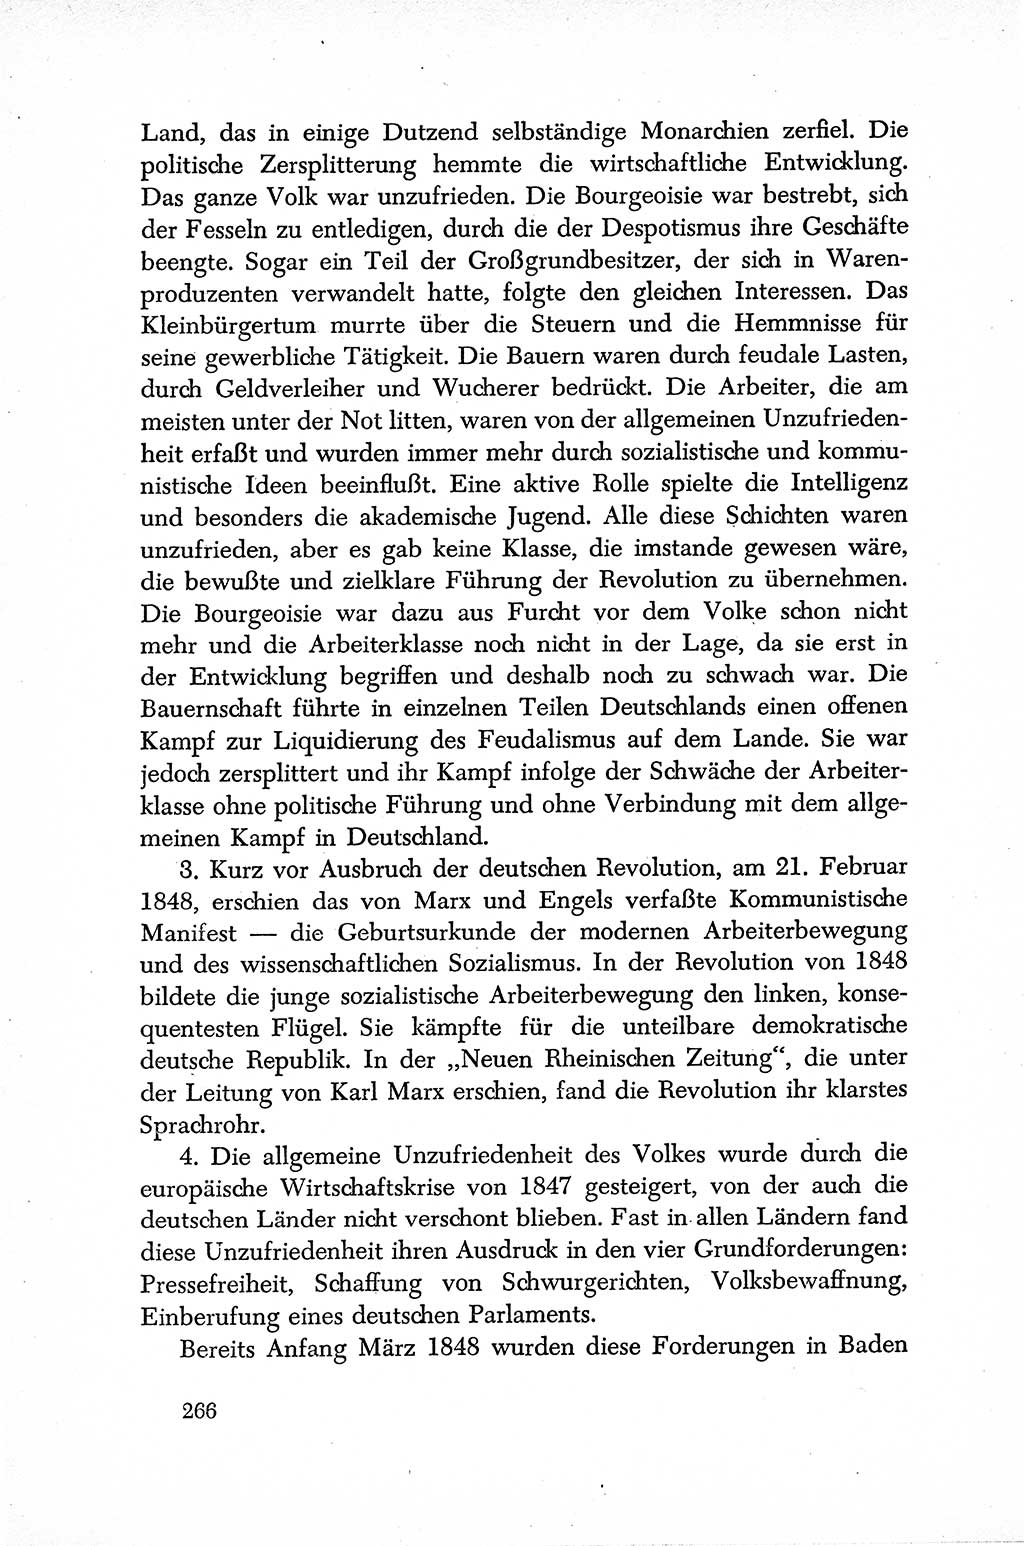 Dokumente der Sozialistischen Einheitspartei Deutschlands (SED) [Sowjetische Besatzungszone (SBZ) Deutschlands] 1946-1948, Seite 266 (Dok. SED SBZ Dtl. 1946-1948, S. 266)